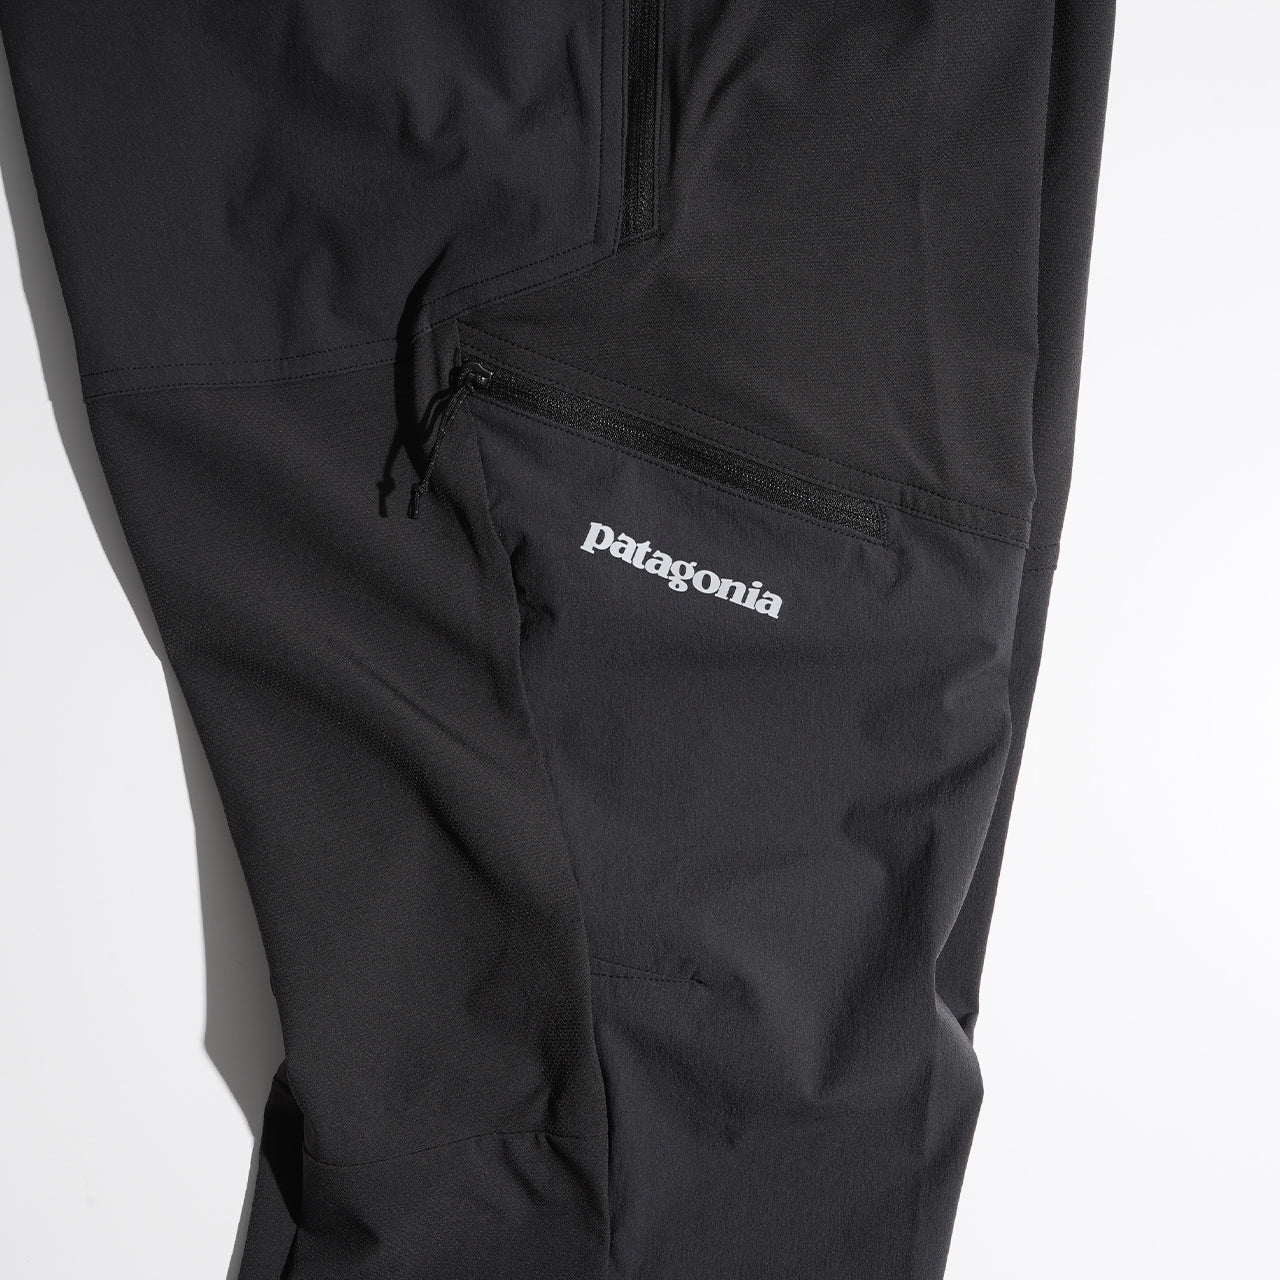 patagonia パタゴニア メンズ テラヴィア アルパイン パンツ(ショート) M's Terravia Alpine Pants - Short 82970  正規取扱店